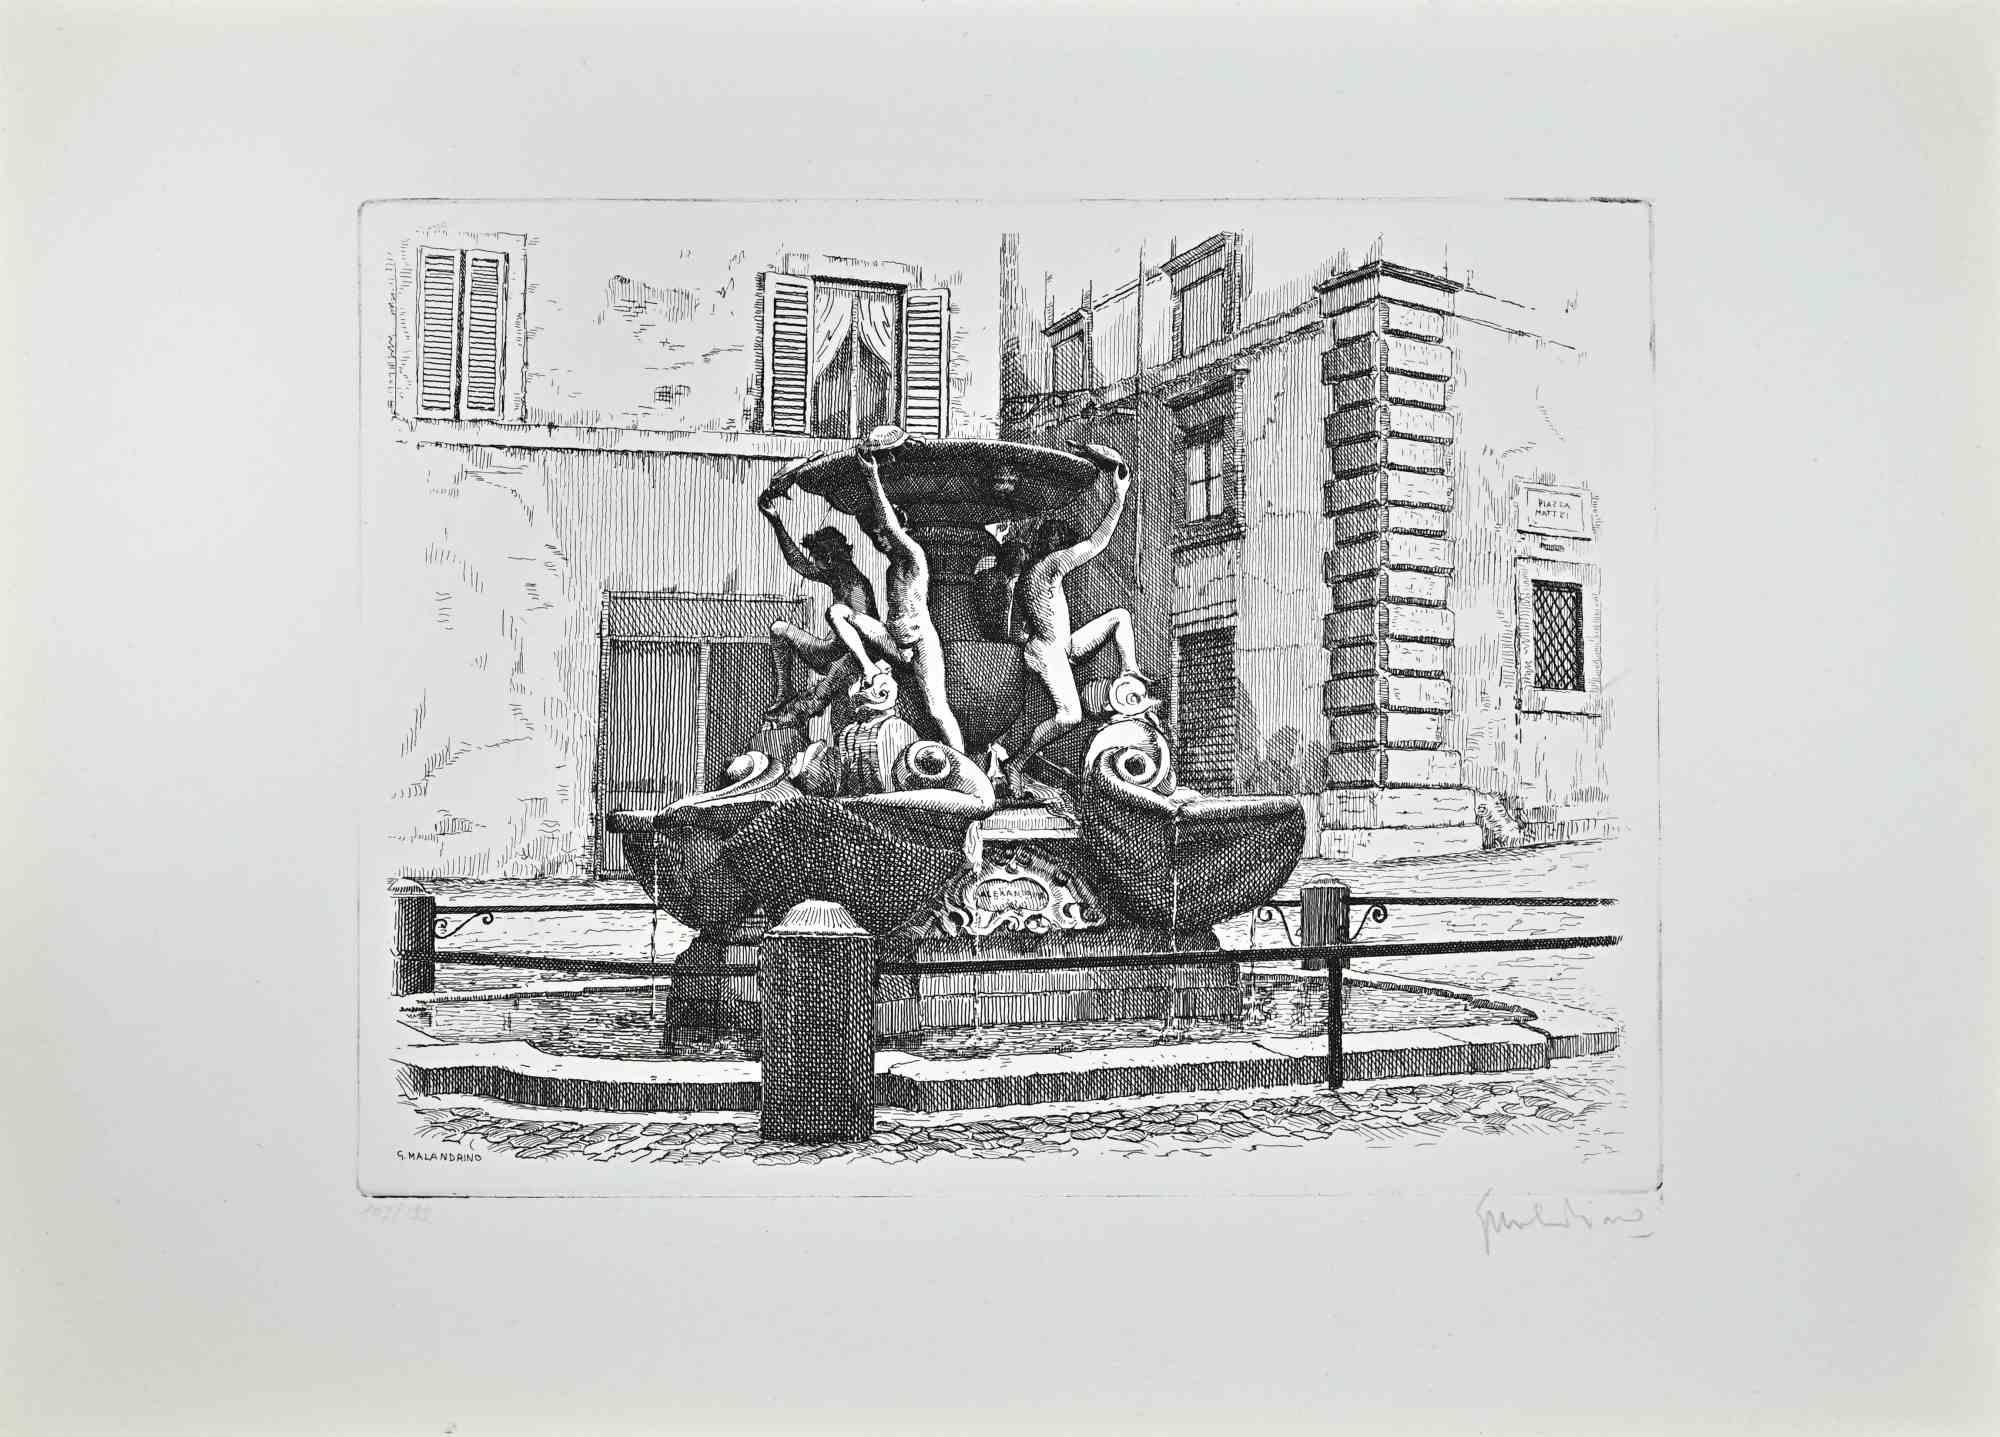 Fountain of the Turtles -Rome ist ein Kunstwerk von Giuseppe Malandrino.

Originaldruck in Ätztechnik.

Vom Künstler in der rechten unteren Ecke mit Bleistift handsigniert.

Nummerierte Ausgabe Nr. 103/199 in der linken unteren Ecke.

Gute